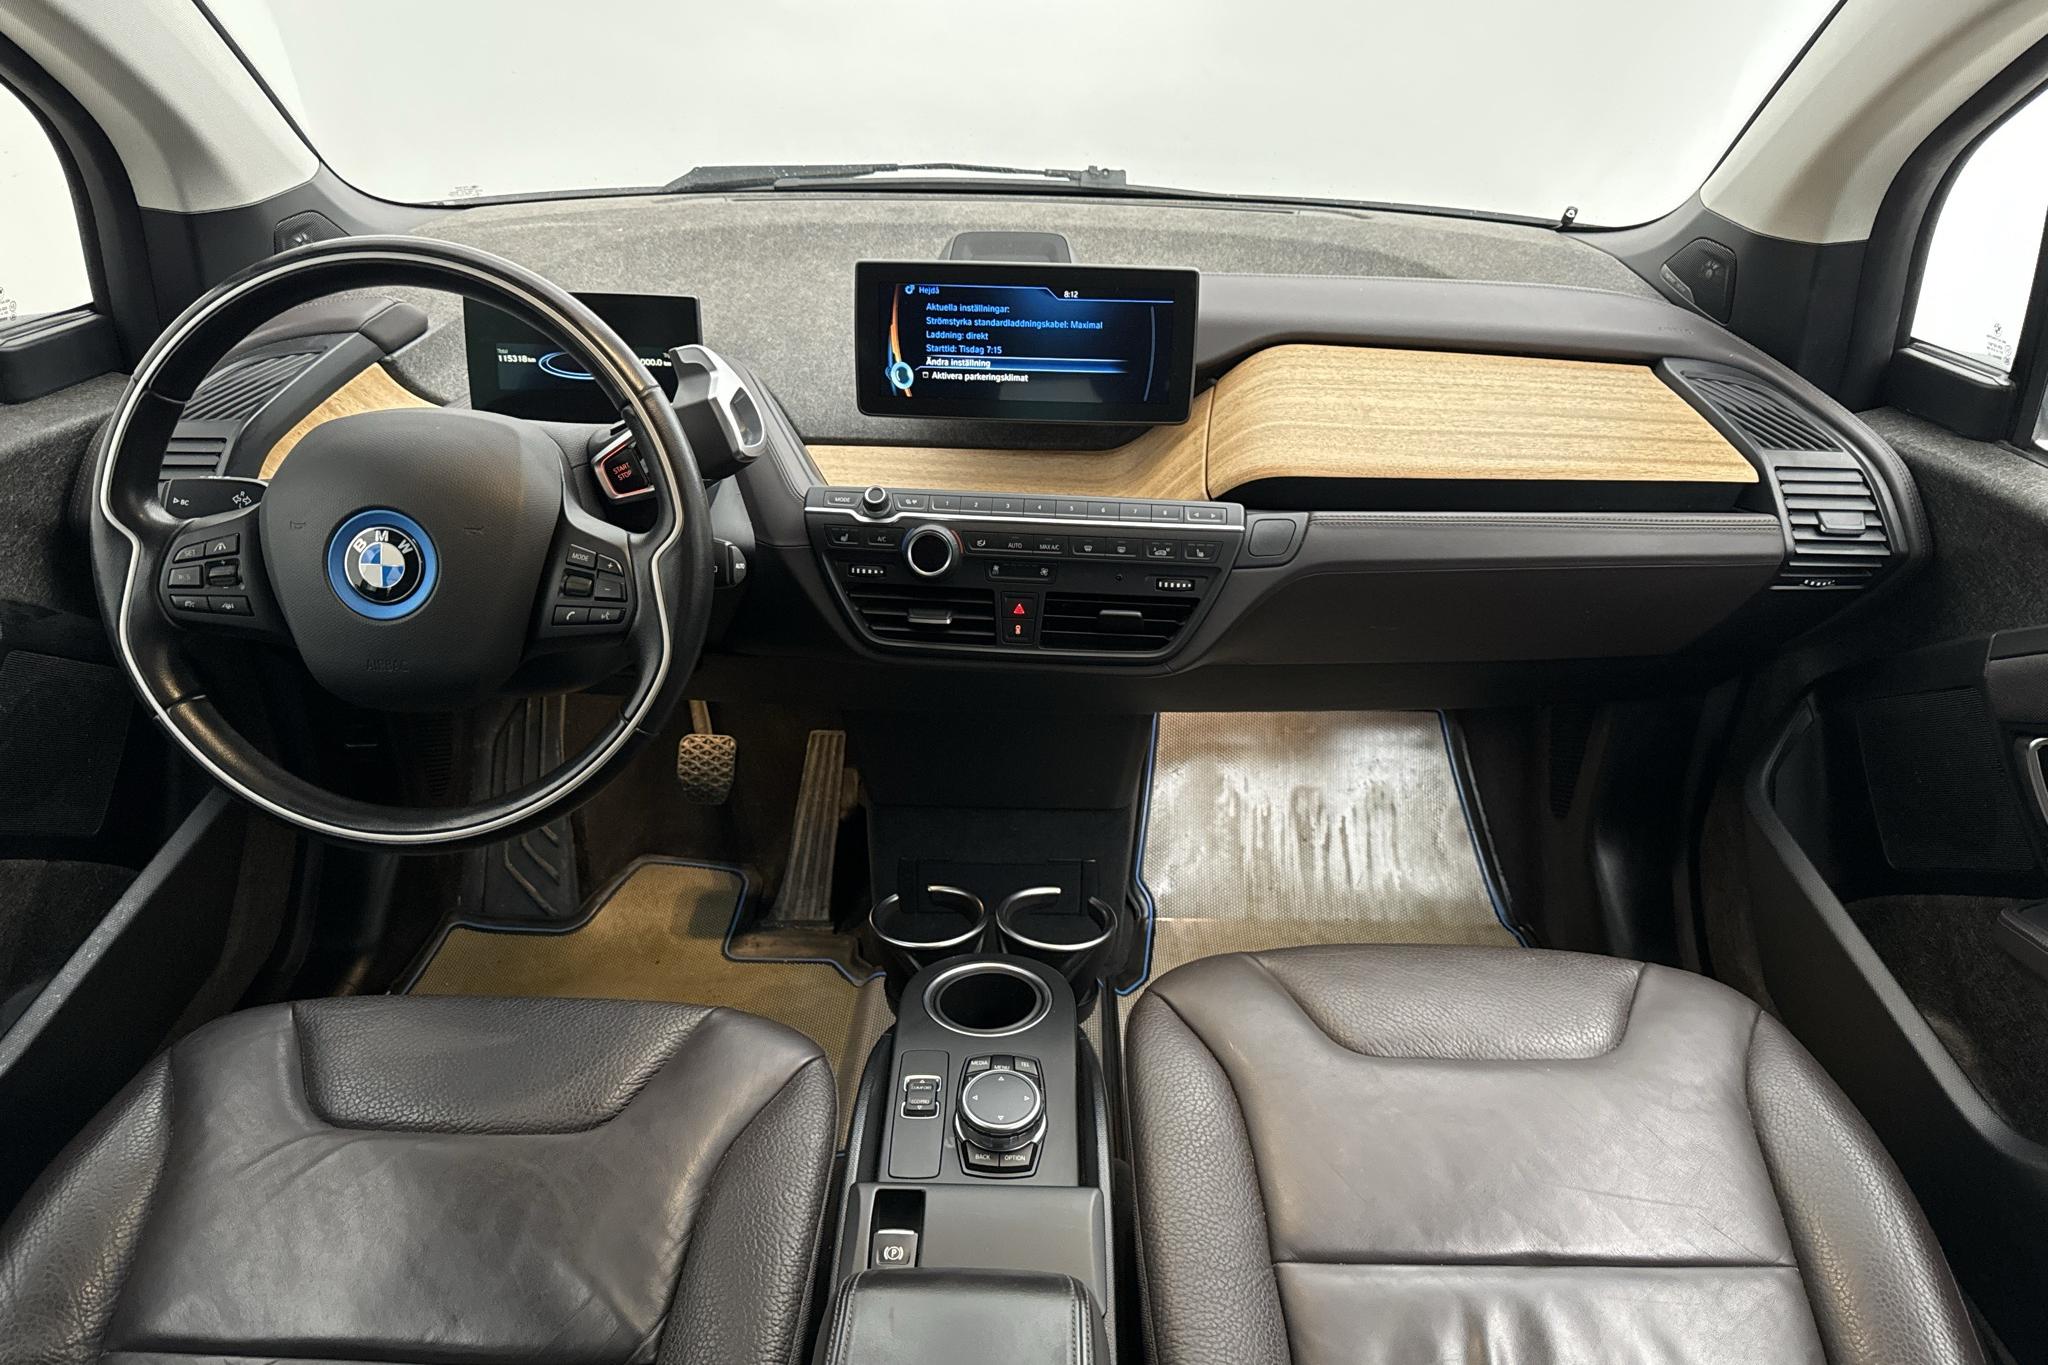 BMW i3 60Ah REX, I01 (170hk) - 11 532 mil - Automat - grå - 2015